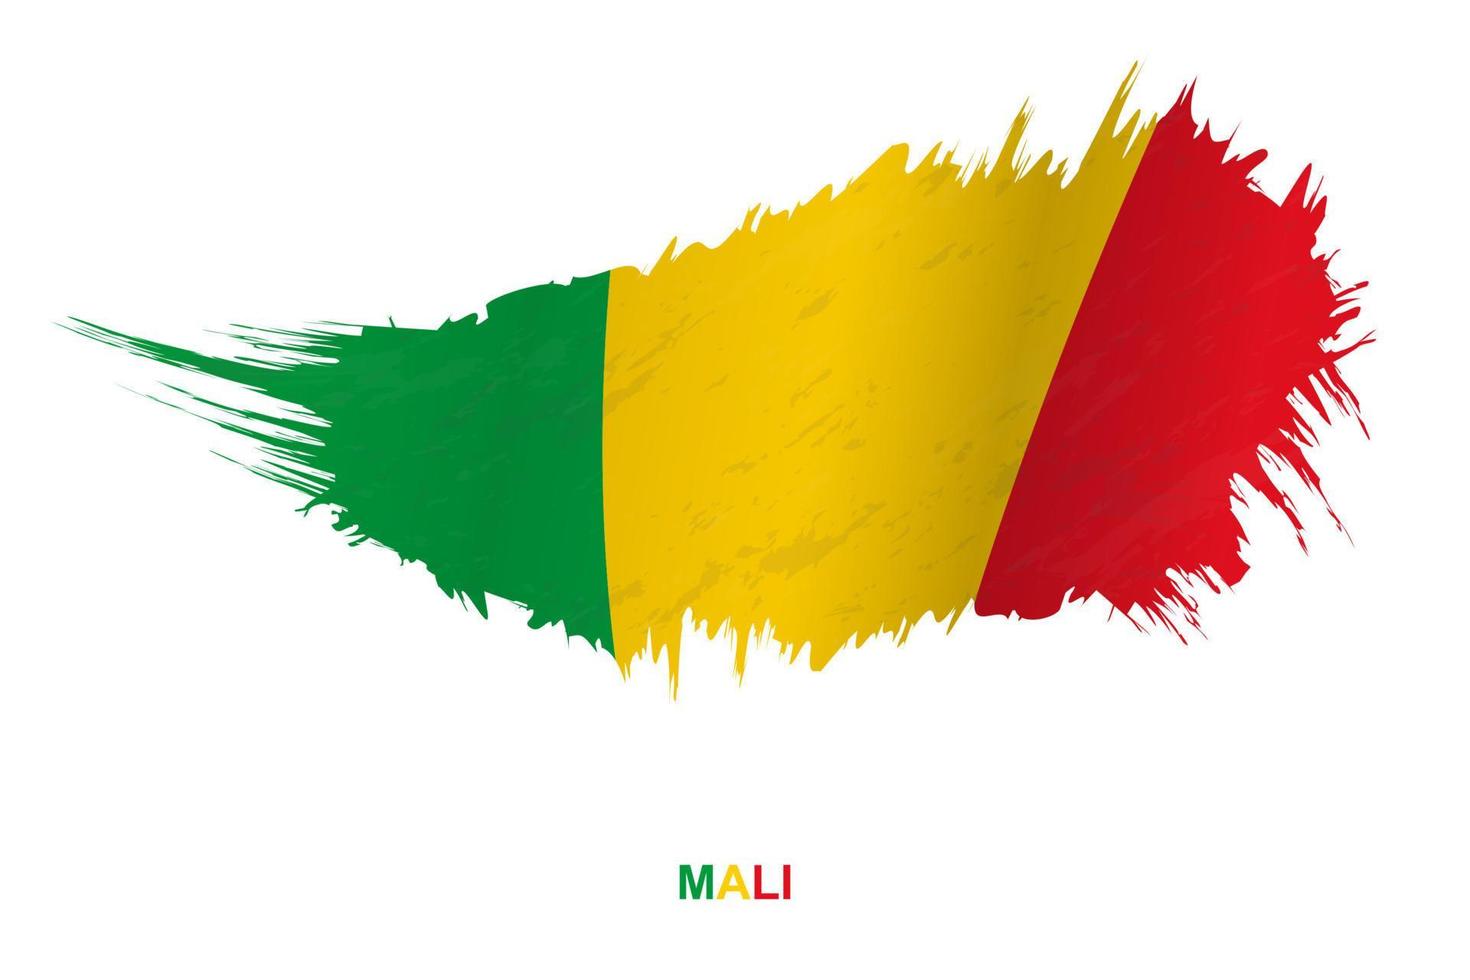 bandeira do mali em estilo grunge com efeito acenando. vetor